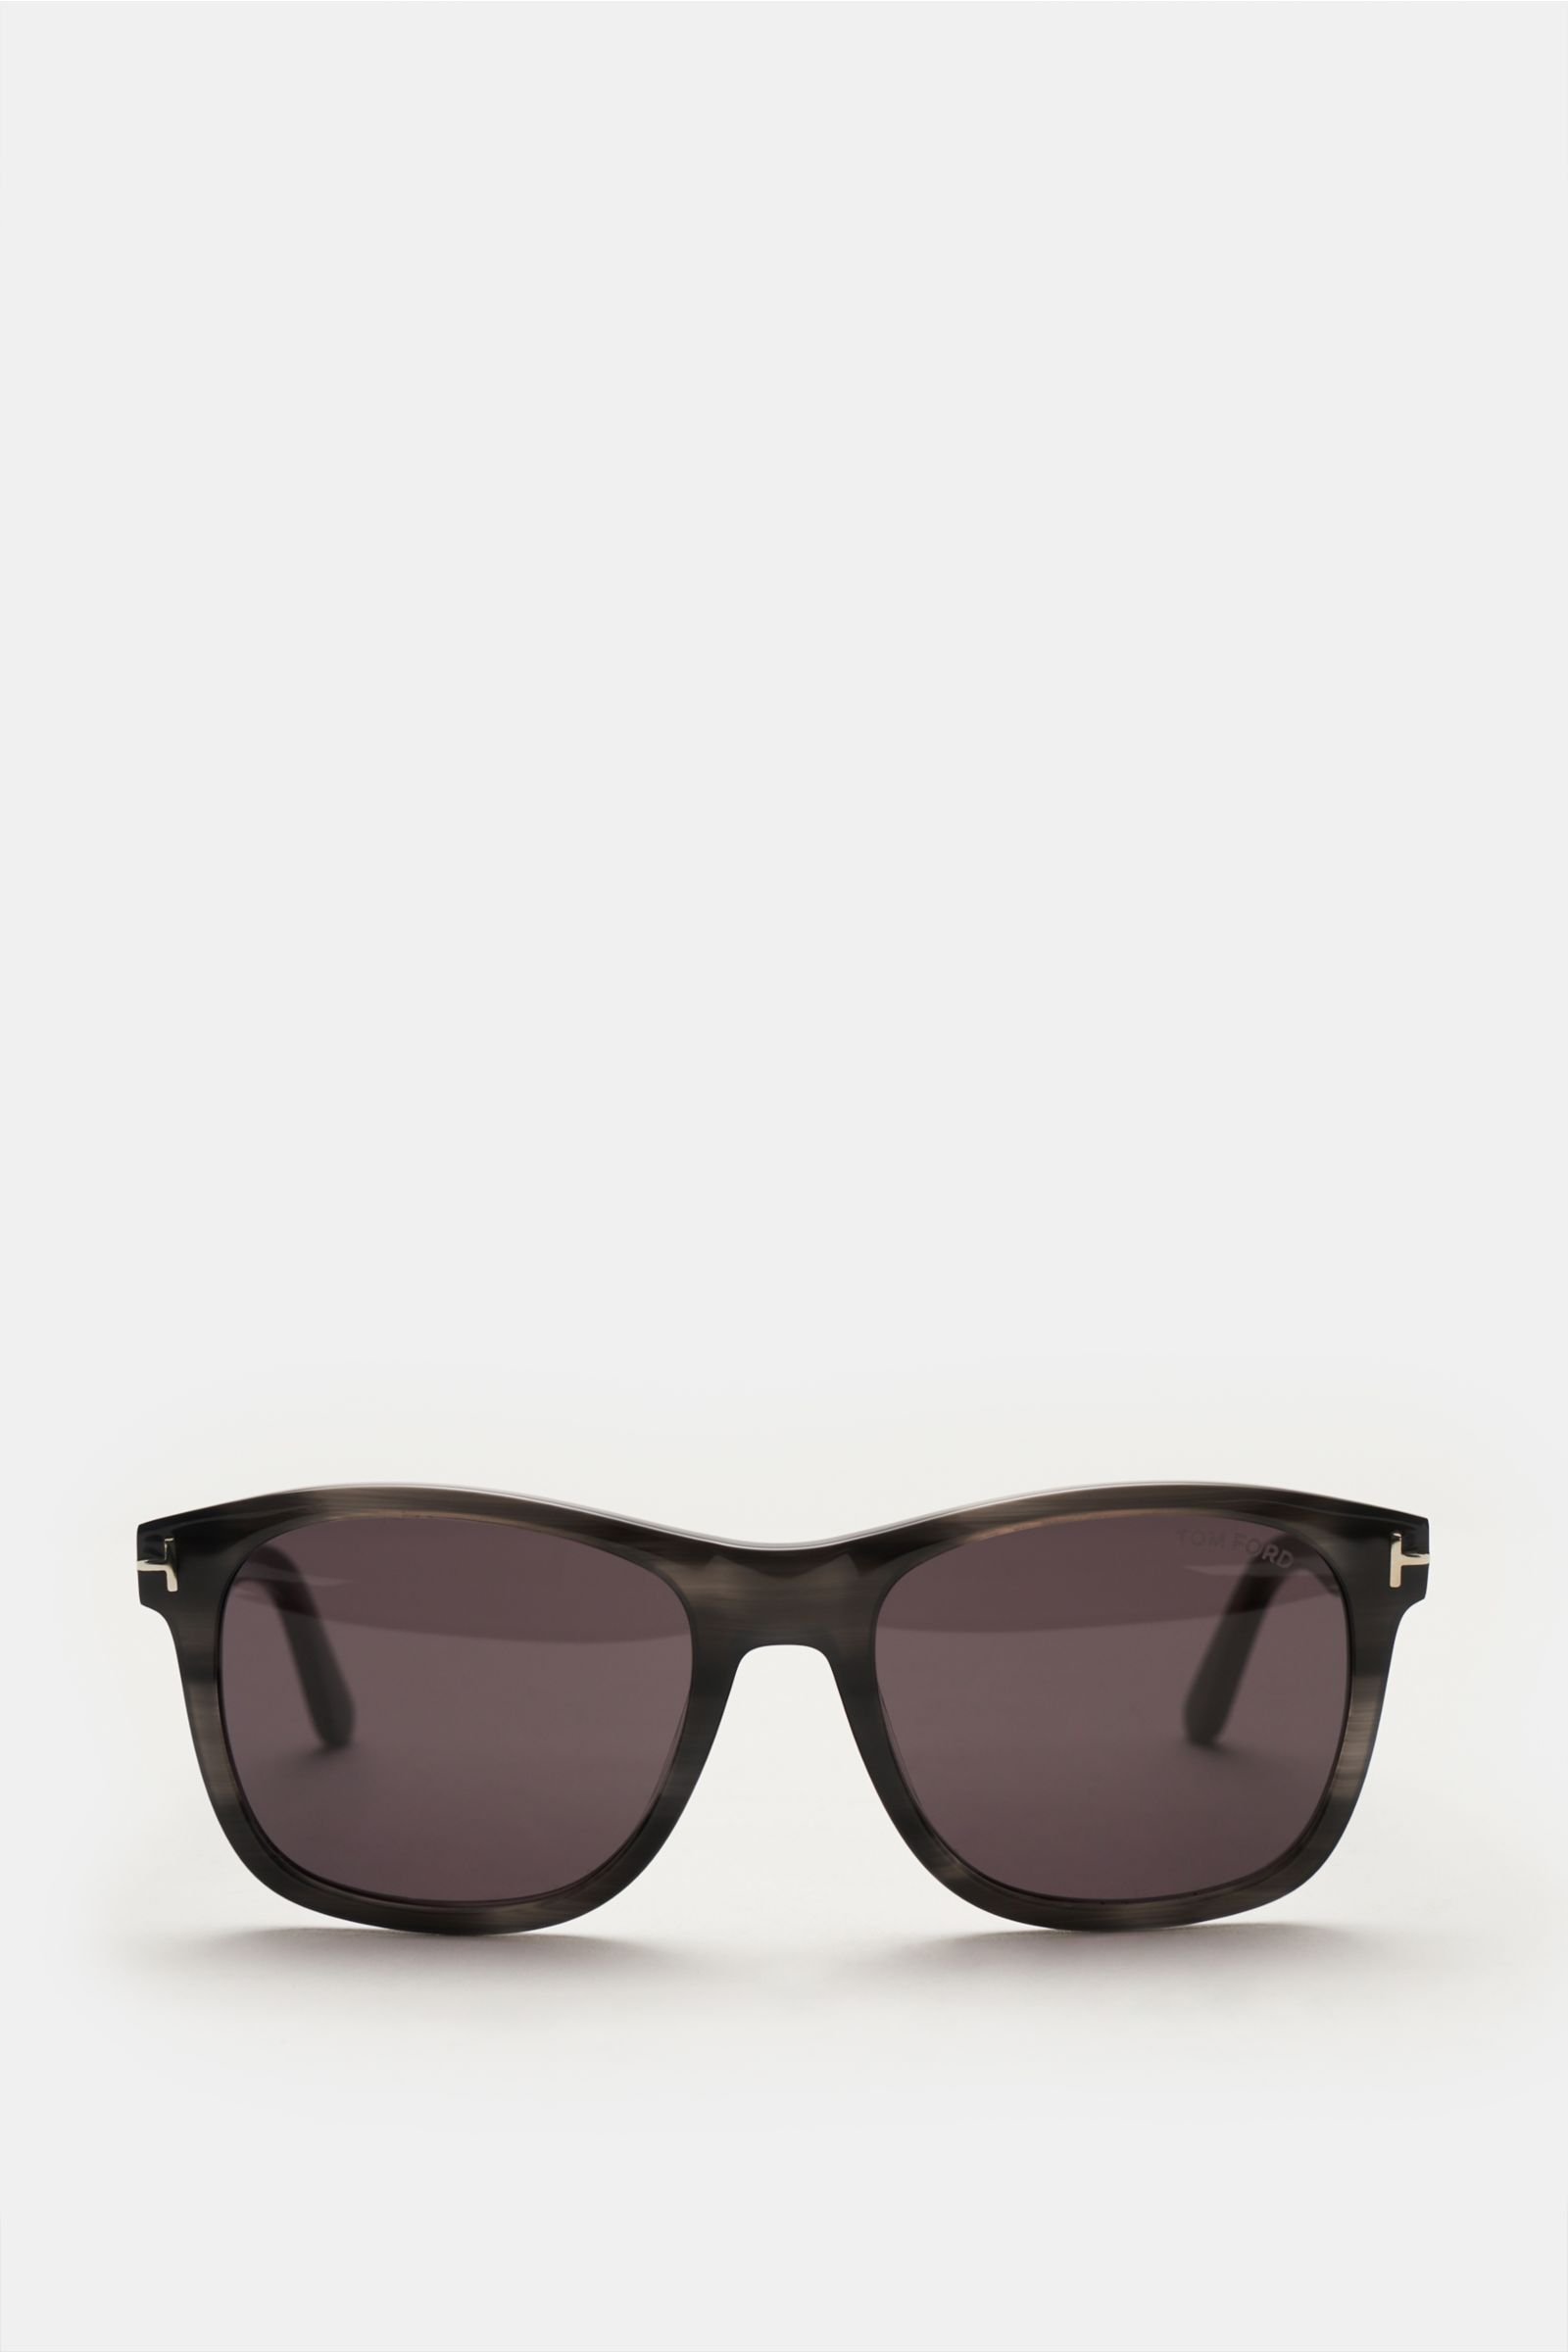 Sunglasses 'Eric' anthracite/dark grey